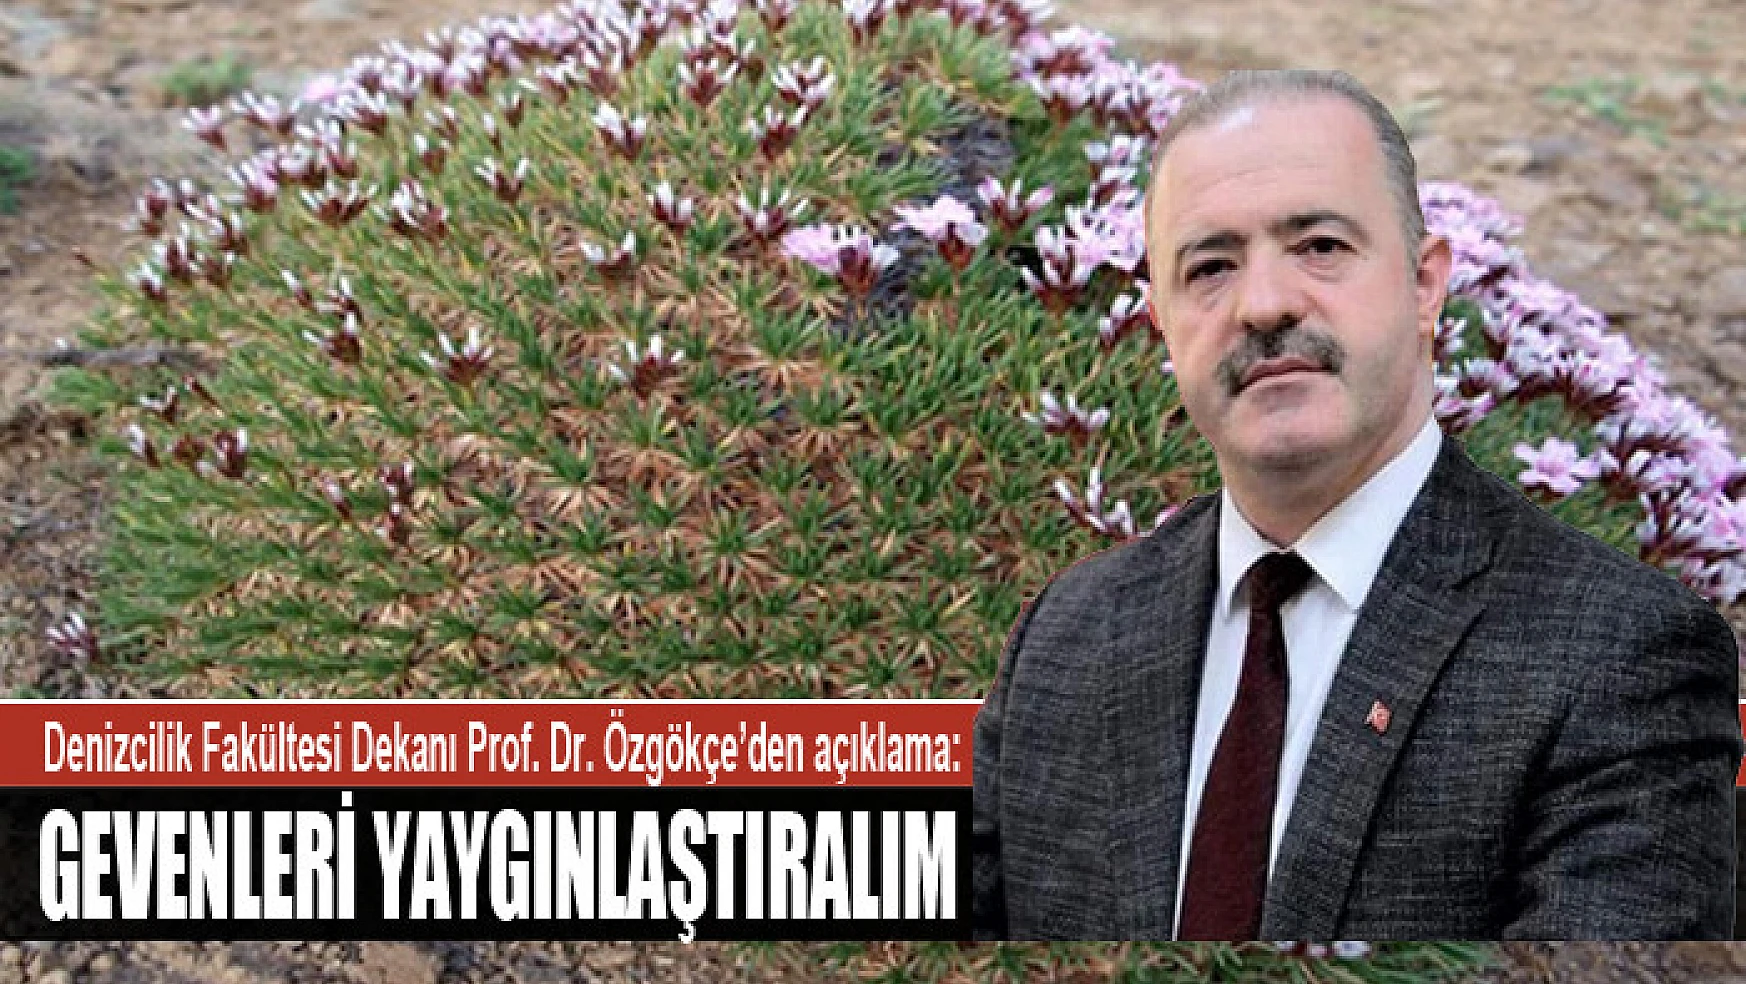 Denizcilik Fakültesi Dekanı Prof. Dr. Özgökçe'den sel açıklaması: Gevenleri yaygınlaştıralım